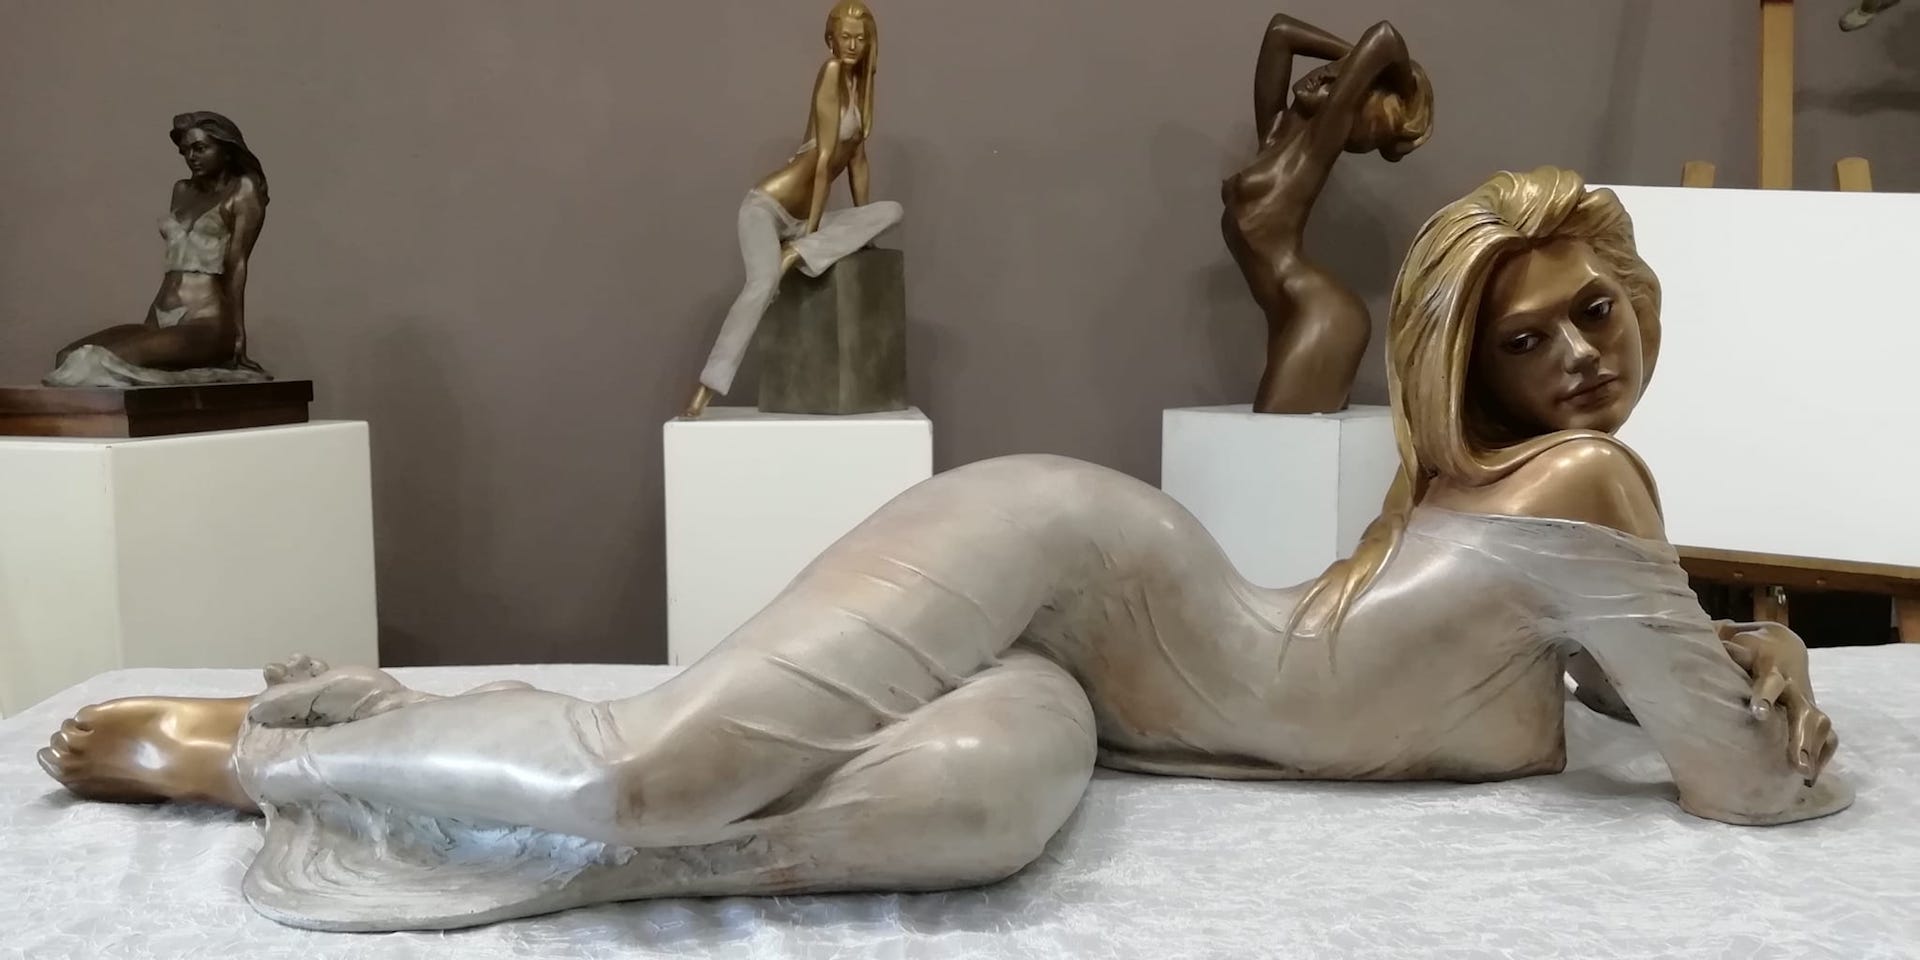 Sculture-bronzo-statue-donne-nudi-femminili-artistici-Eva-velata-orizzontale-1